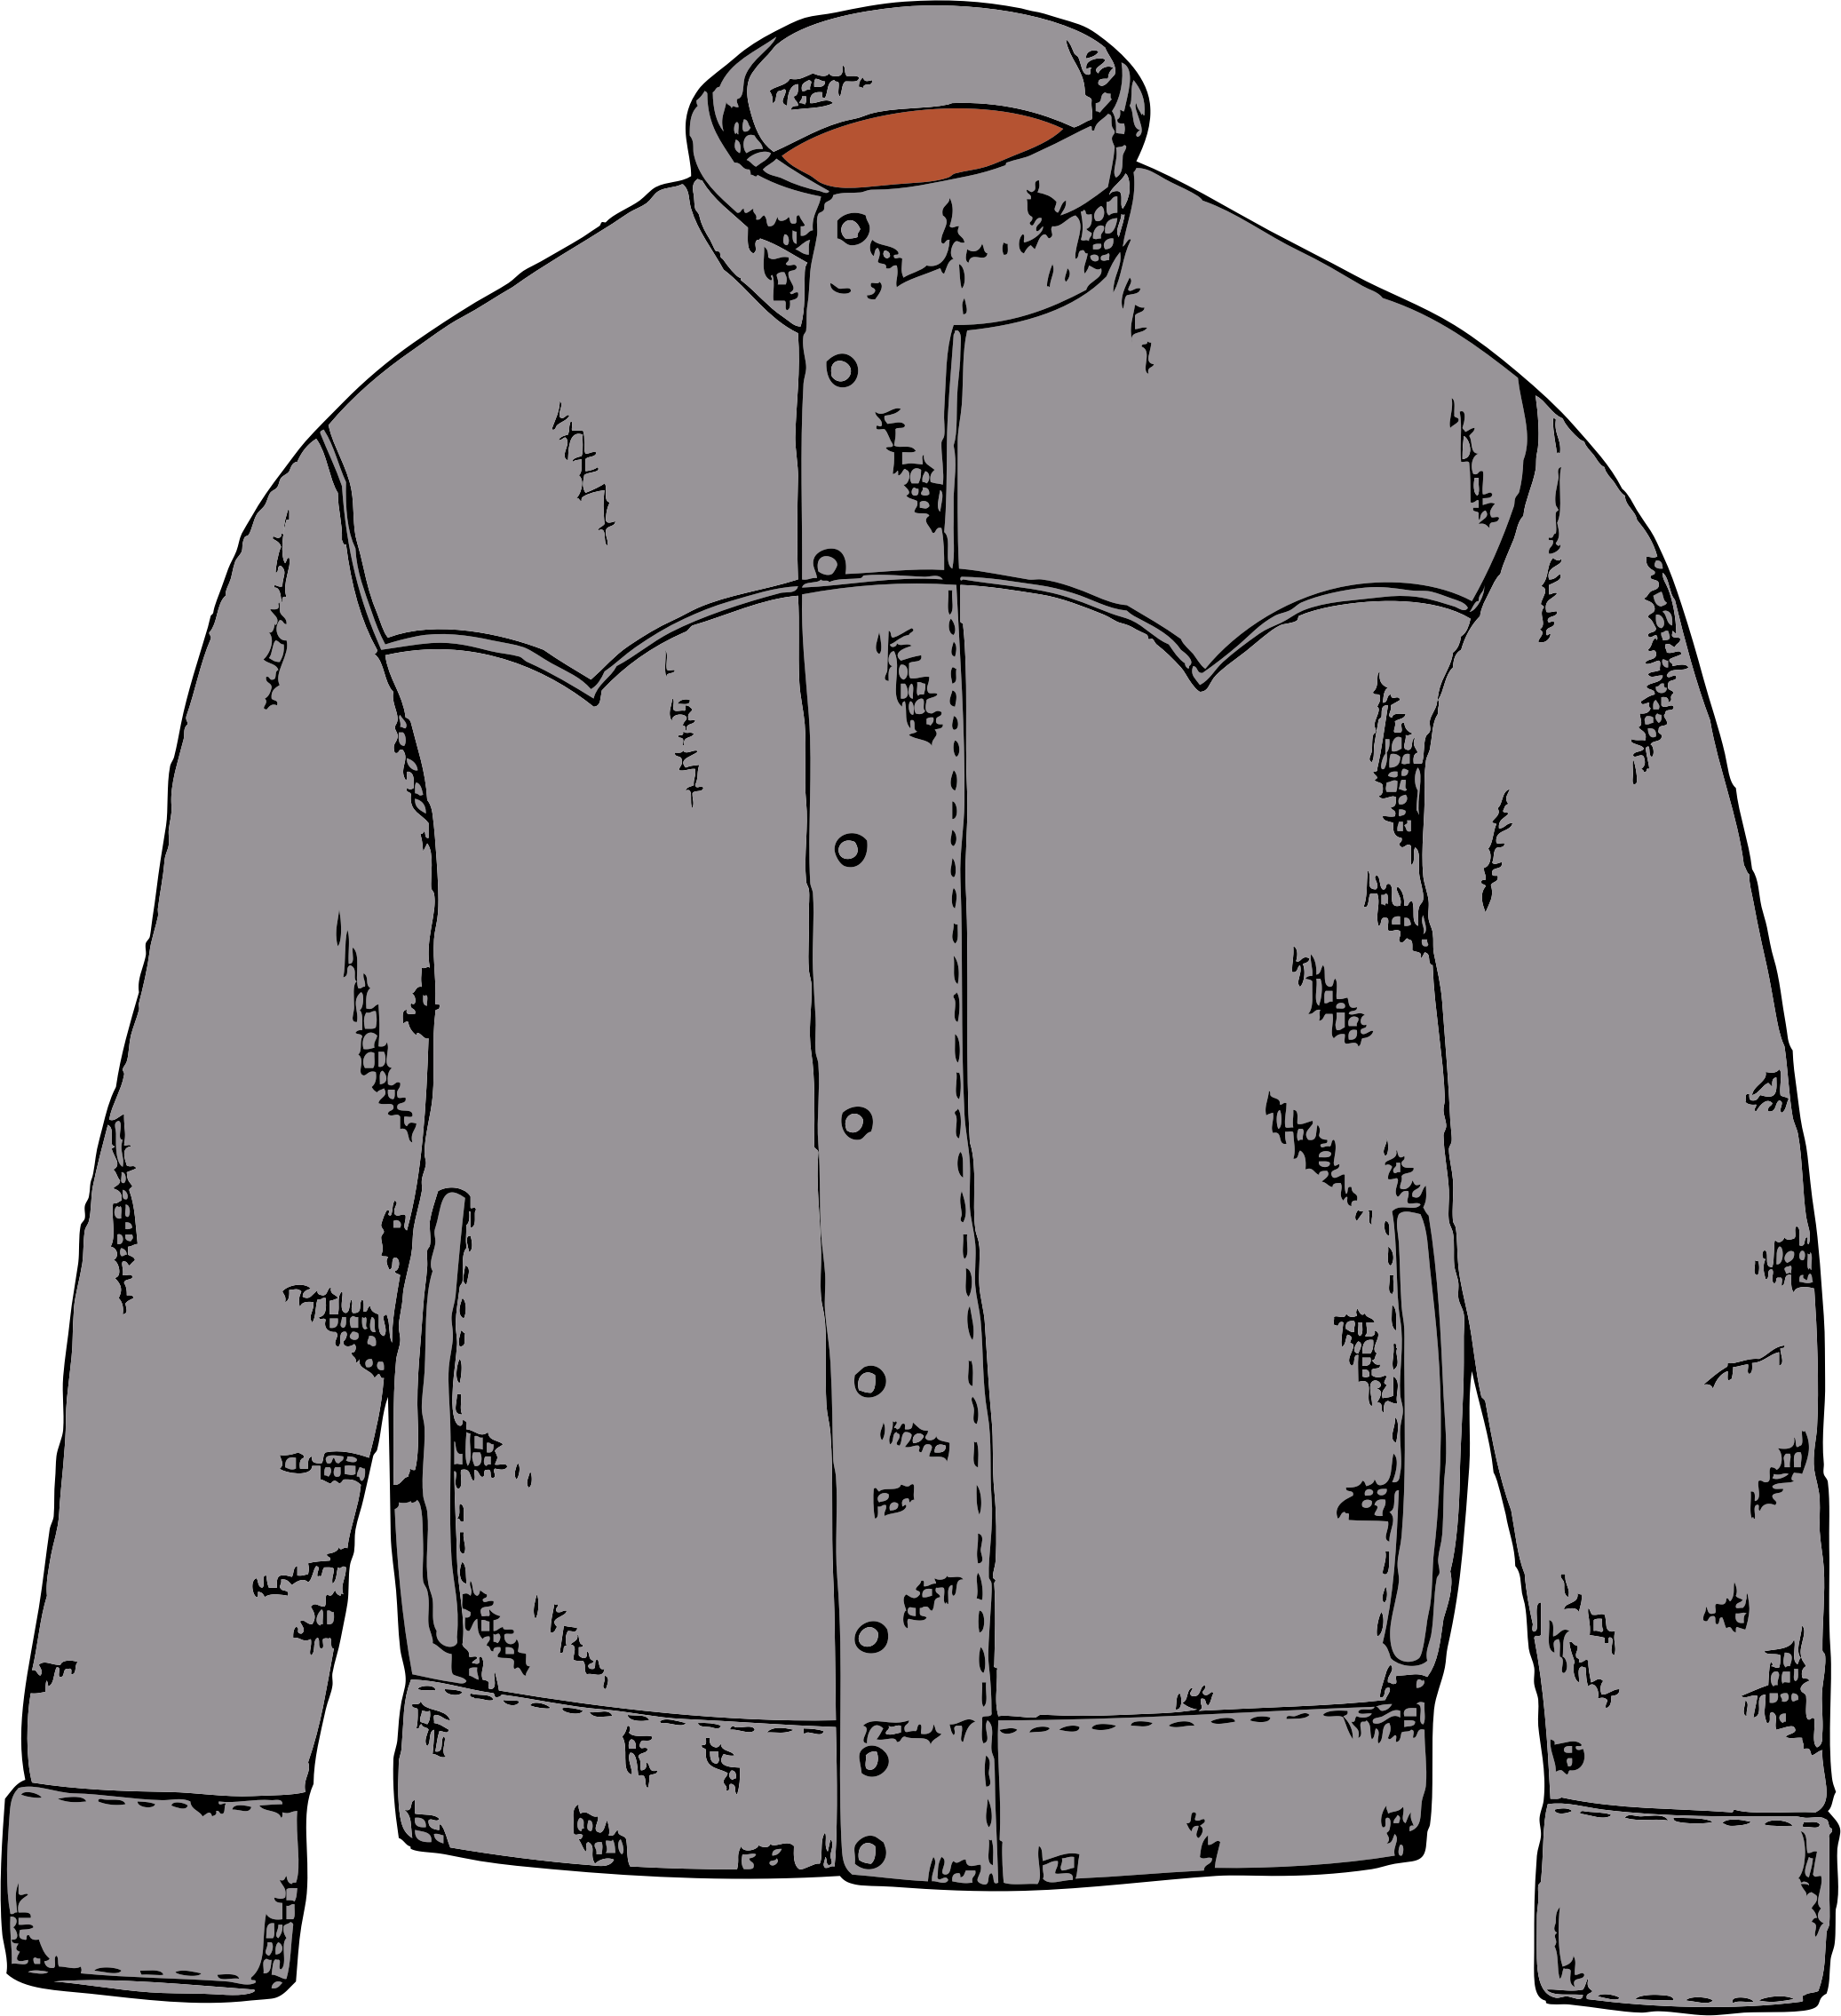 coat clipart jacket zipper